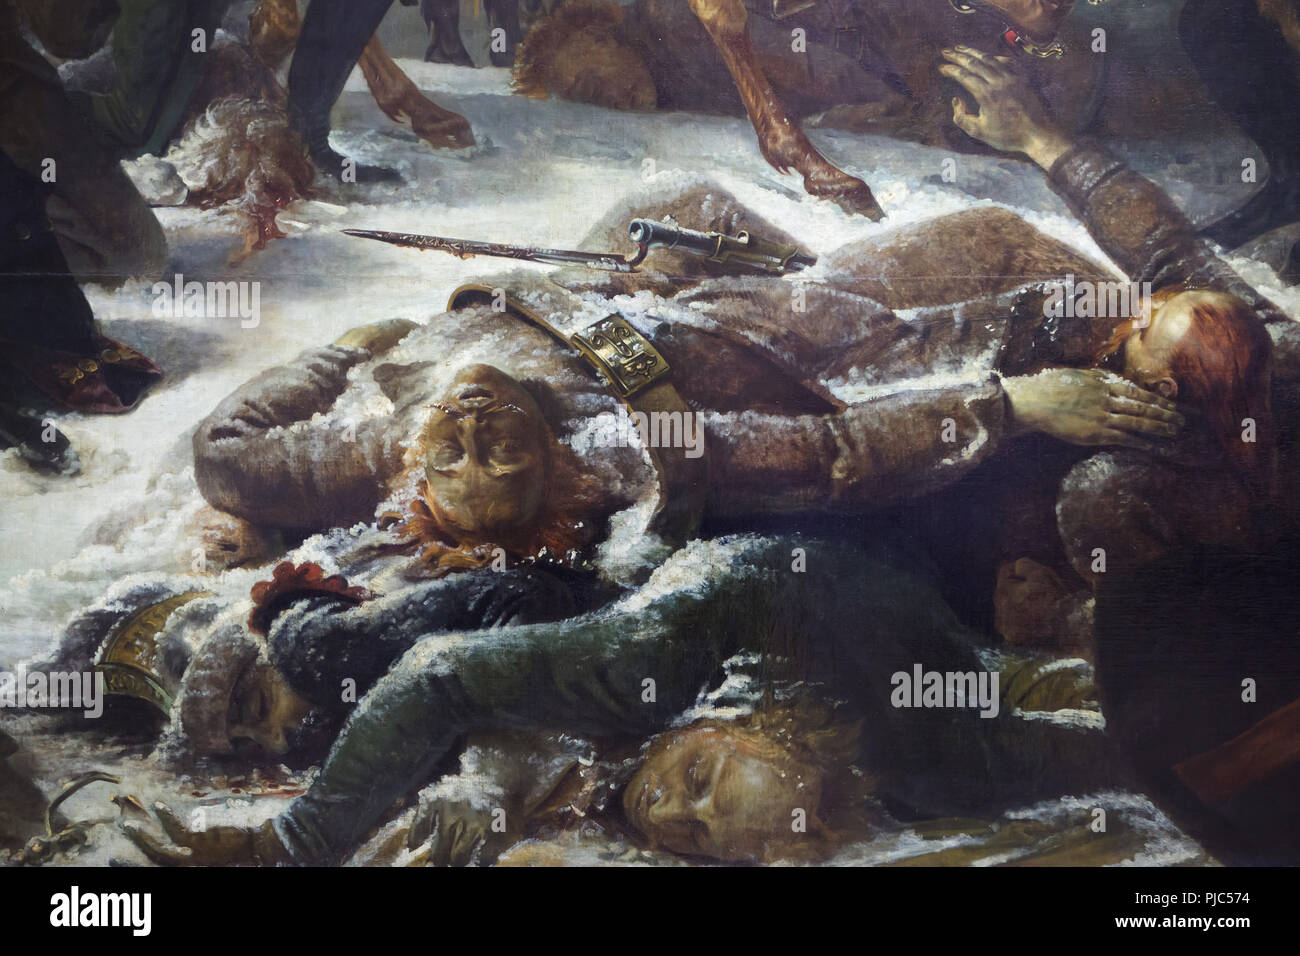 Morts et blessés des soldats russes décrite dans le détail de la grande peinture 'Napoléon sur le champ de bataille d'Eylau' par Antoine-Jean Gros peintre néo-classique français (1808) sur l'affichage dans le musée du Louvre à Paris, France. Banque D'Images